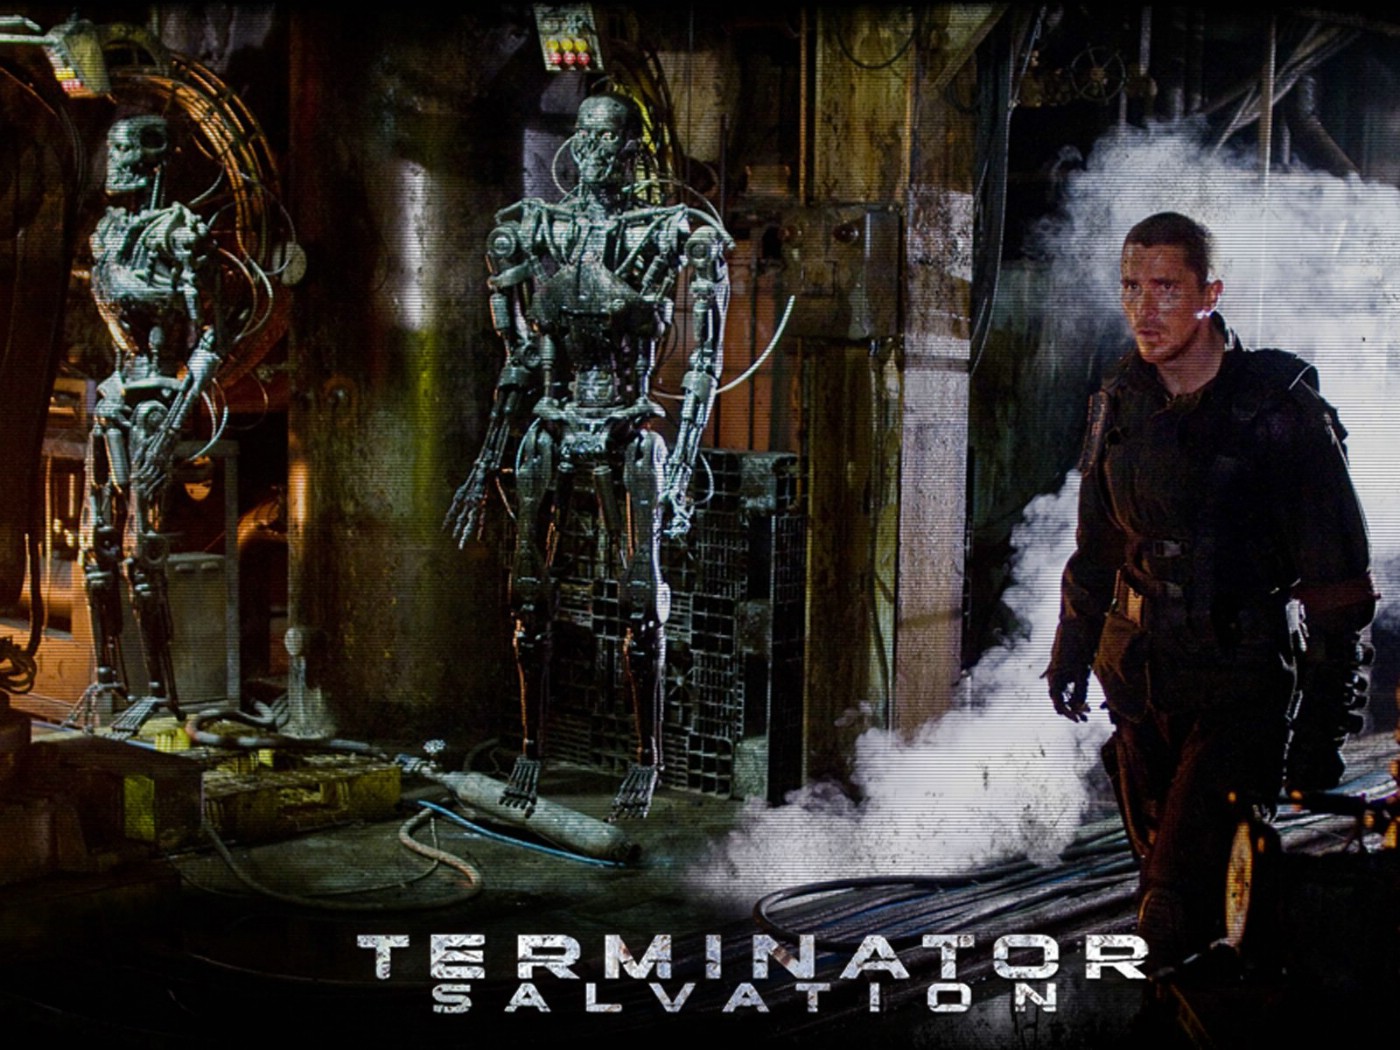 壁纸1400x1050终结者 救世主 Terminator Salvation 电影壁纸 Terminator Salvation 终结者4壁纸 《终结者救世主 Terminator Salvation 》壁纸 《终结者救世主 Terminator Salvation 》图片 《终结者救世主 Terminator Salvation 》素材 影视壁纸 影视图库 影视图片素材桌面壁纸